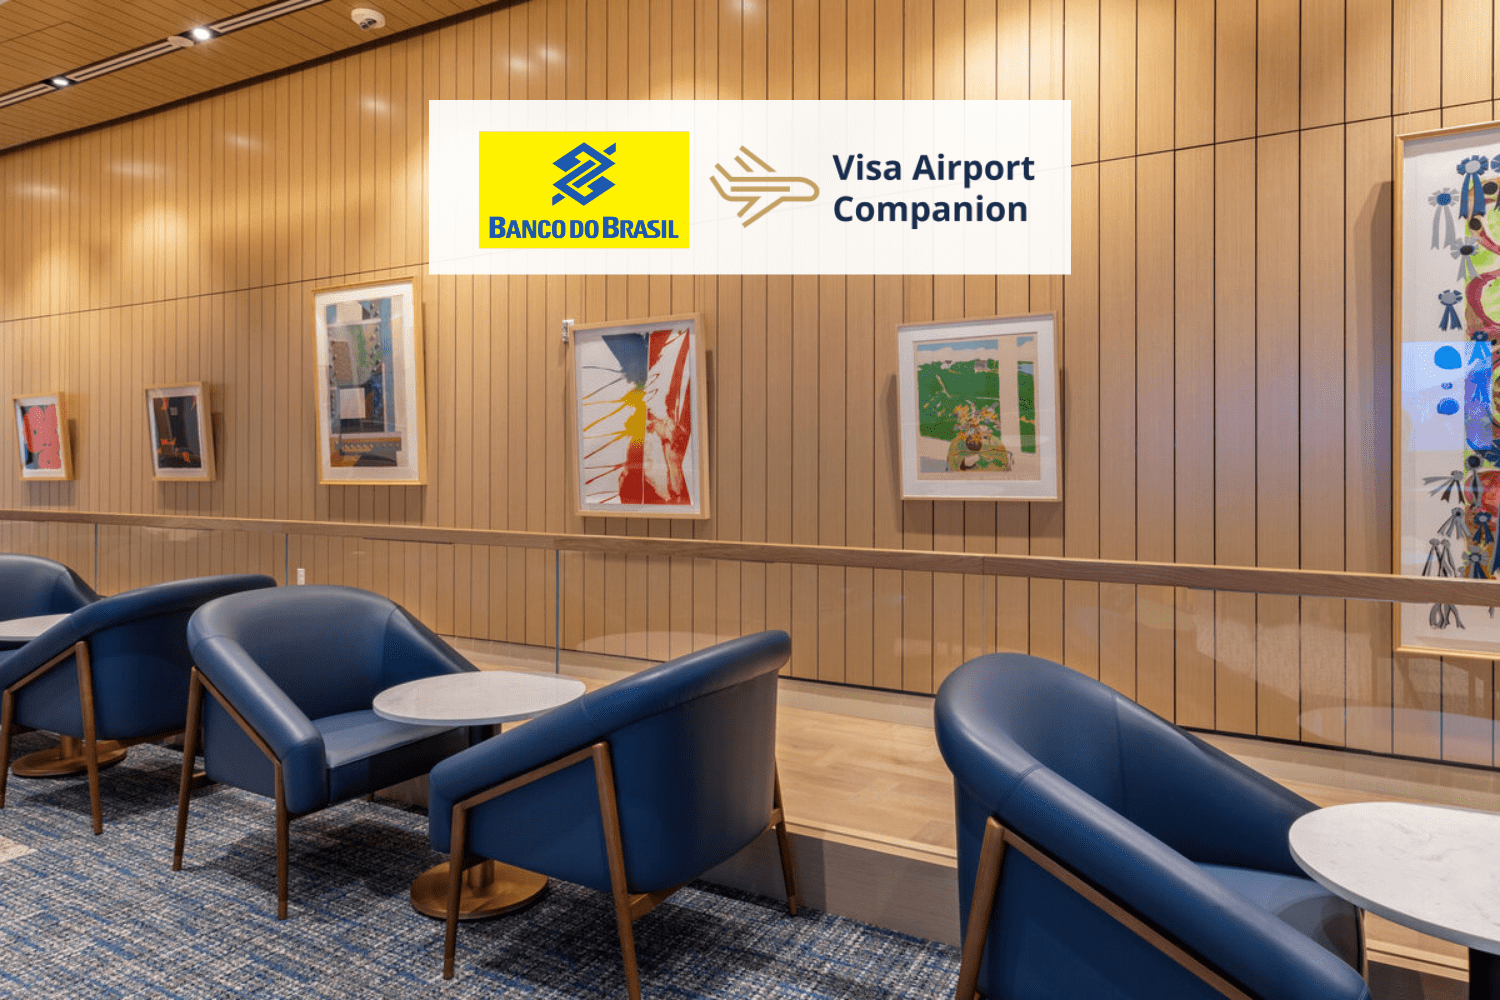 sala vip com logo Banco do Brasil e Visa Airport Companion